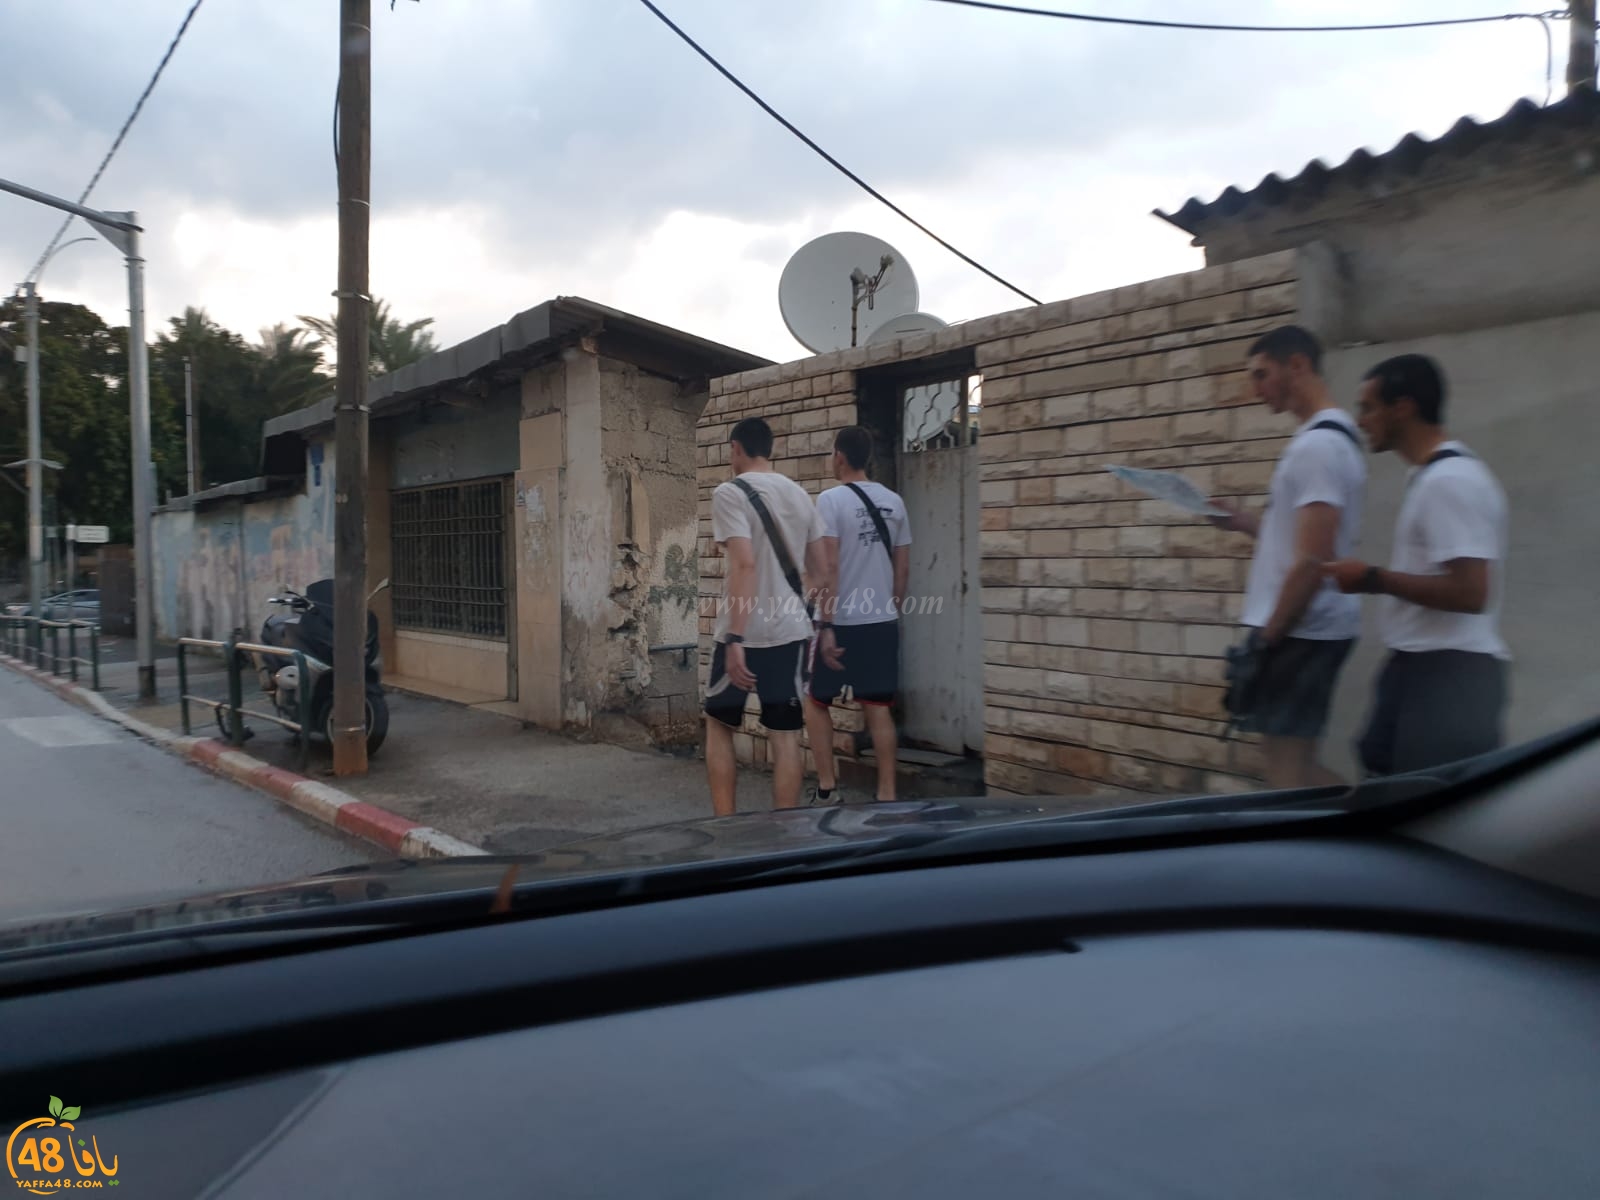    بالصور: وحدات من الجيش الاسرائيلي في مهمات استطلاعية بمدينة يافا